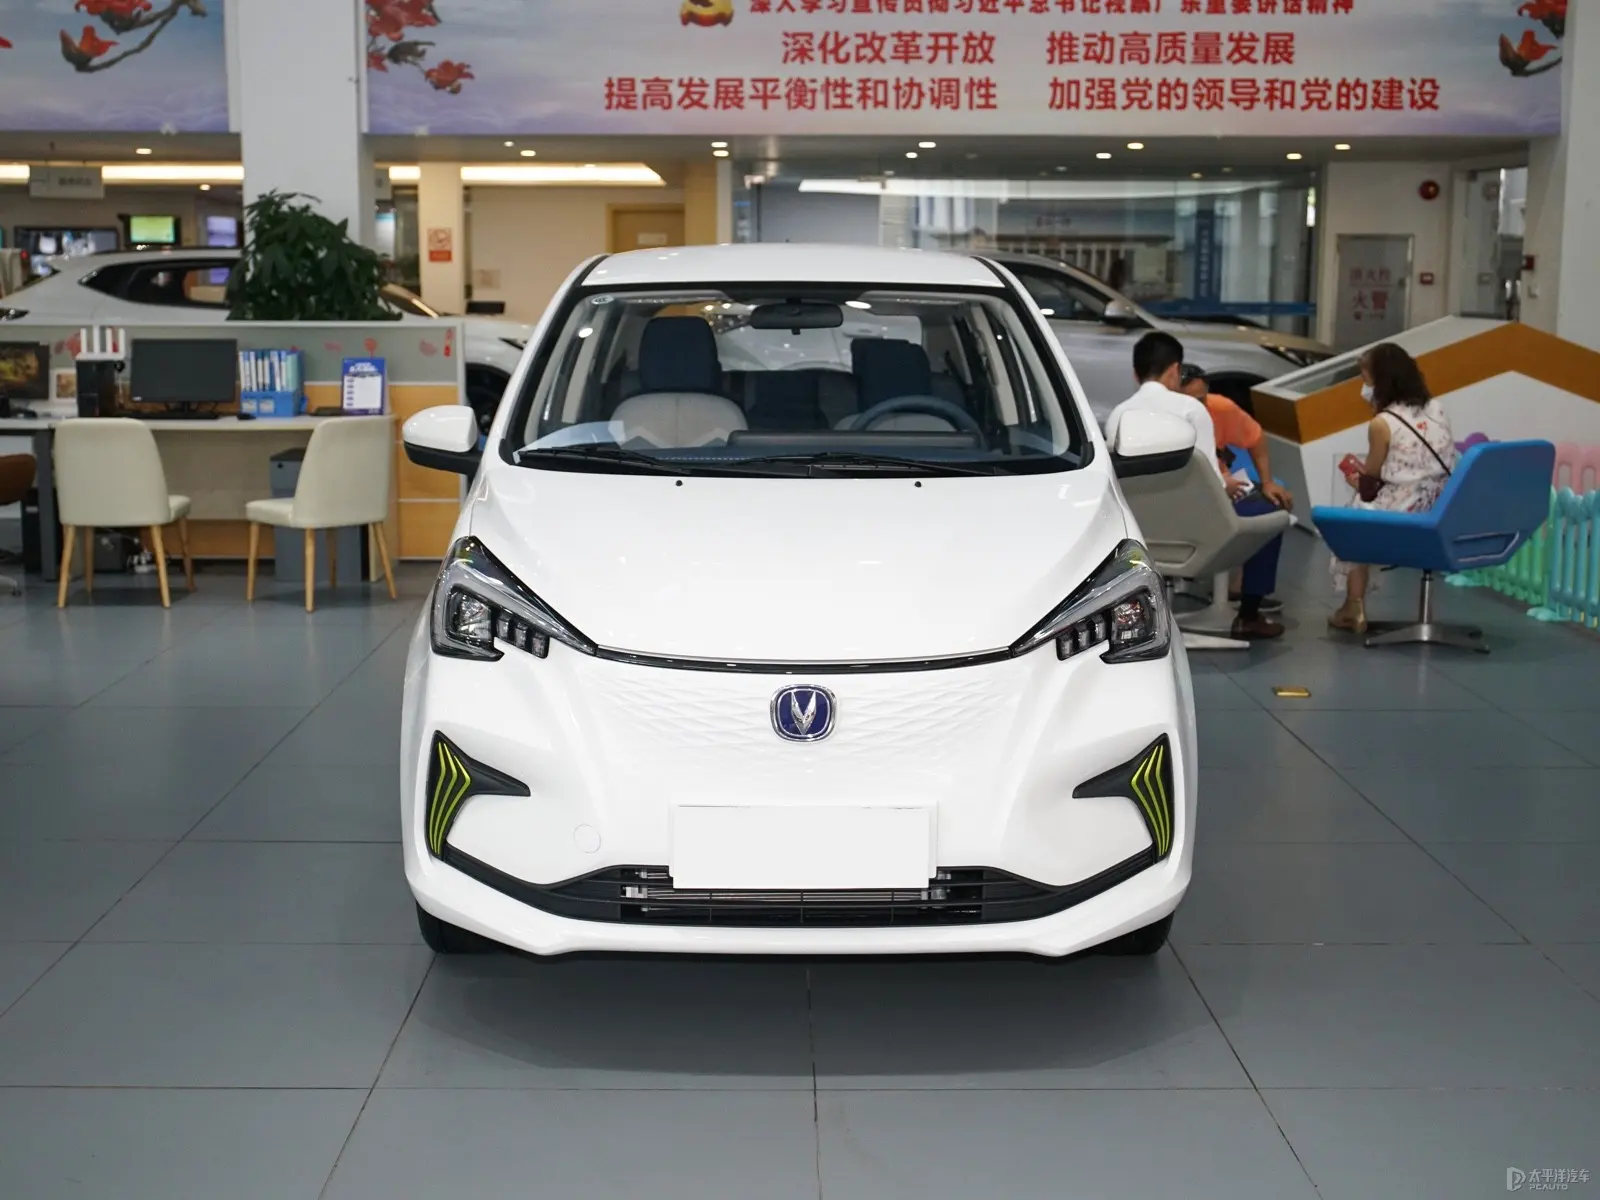 Hohe Qualität am billigsten mit neuer Energie kleines Elektroauto Changan benben e-star 2023 0km neuer changan e star